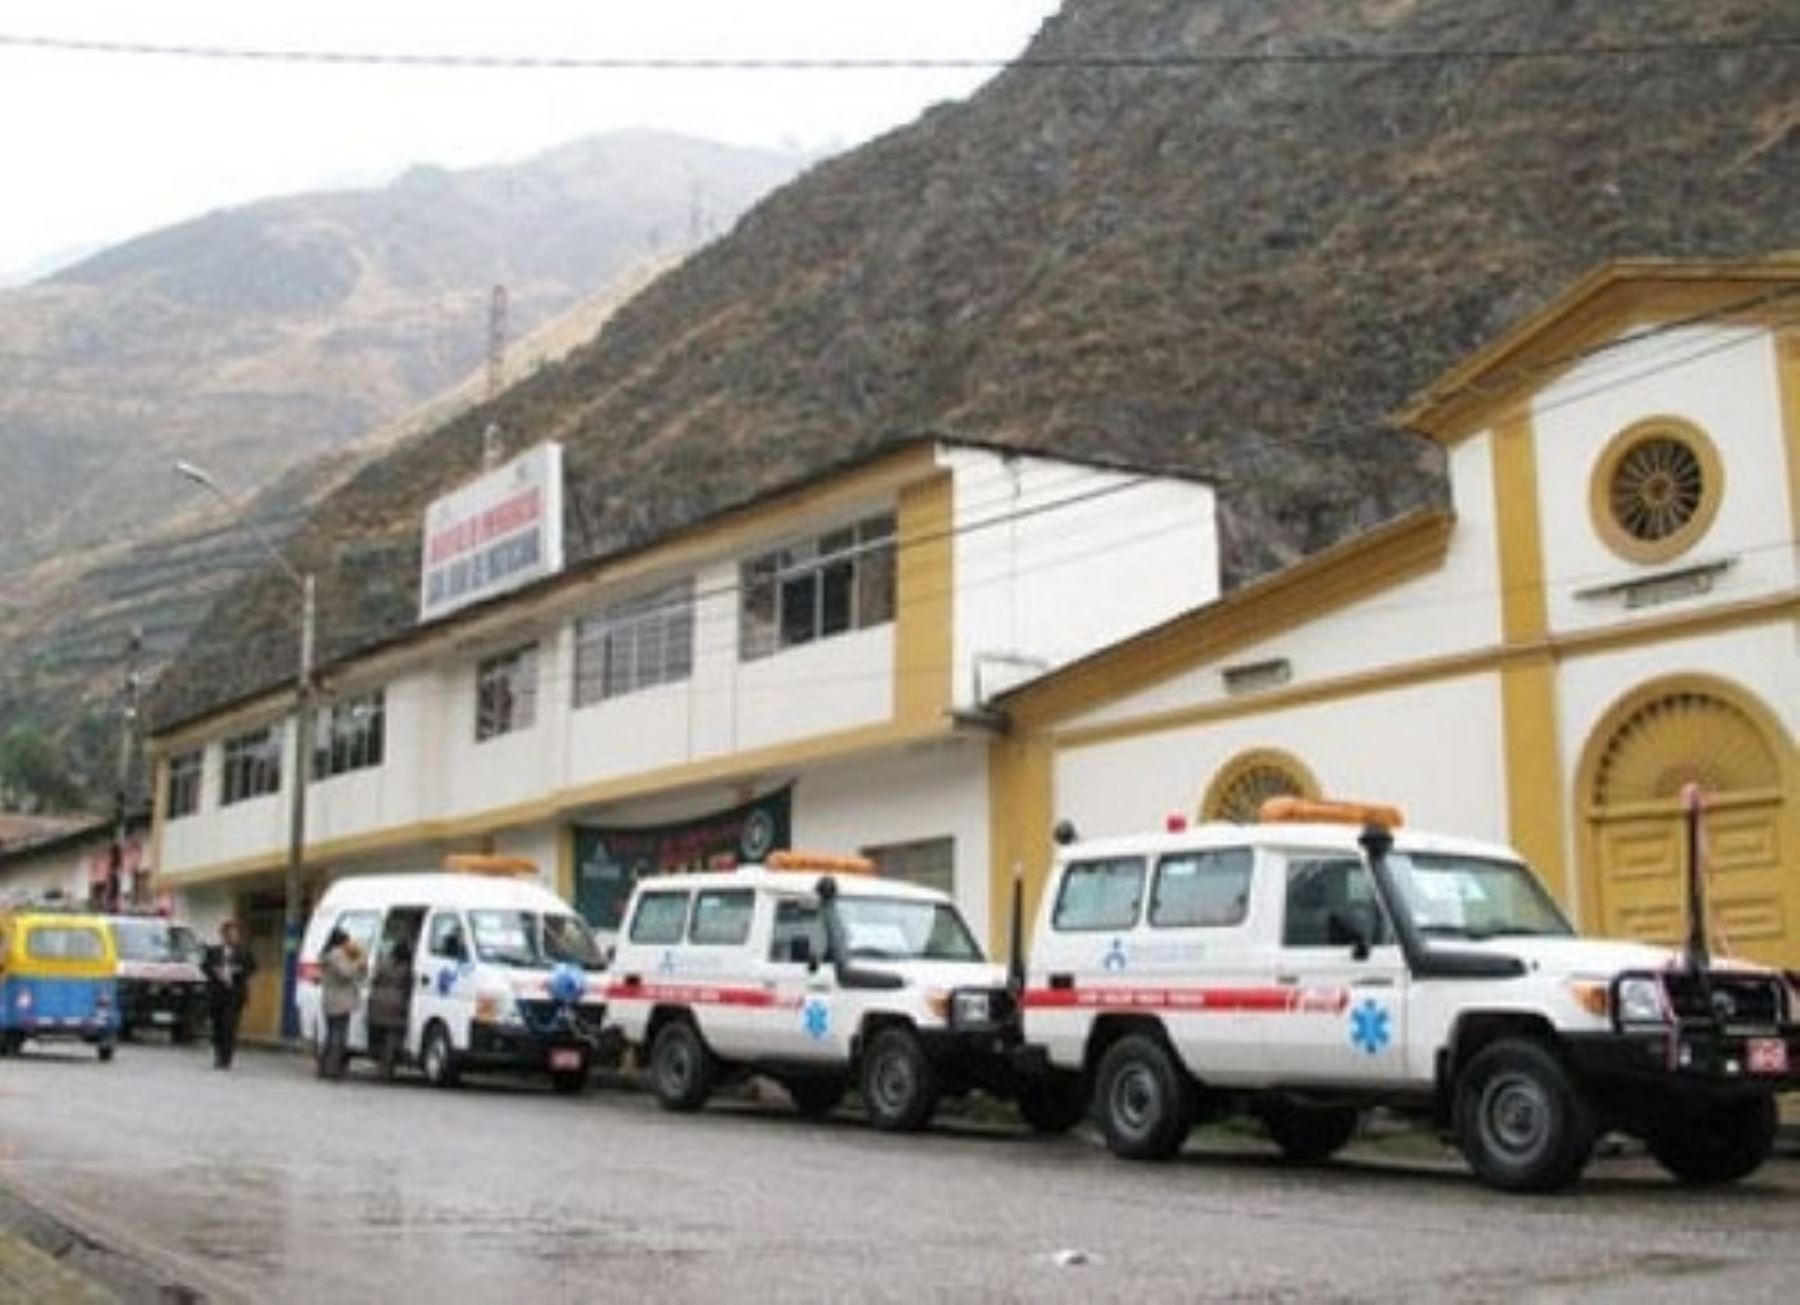 La Dirección Regional de Salud (Diresa) del Gobierno Regional de Lima dispuso el estado de alerta en los 328 establecimientos de salud de las nueve provincias ante la ocurrencia de sismos en Matucana, provincia de Huarochirí, a fin de garantizar la adecuada atención de la comunidad.